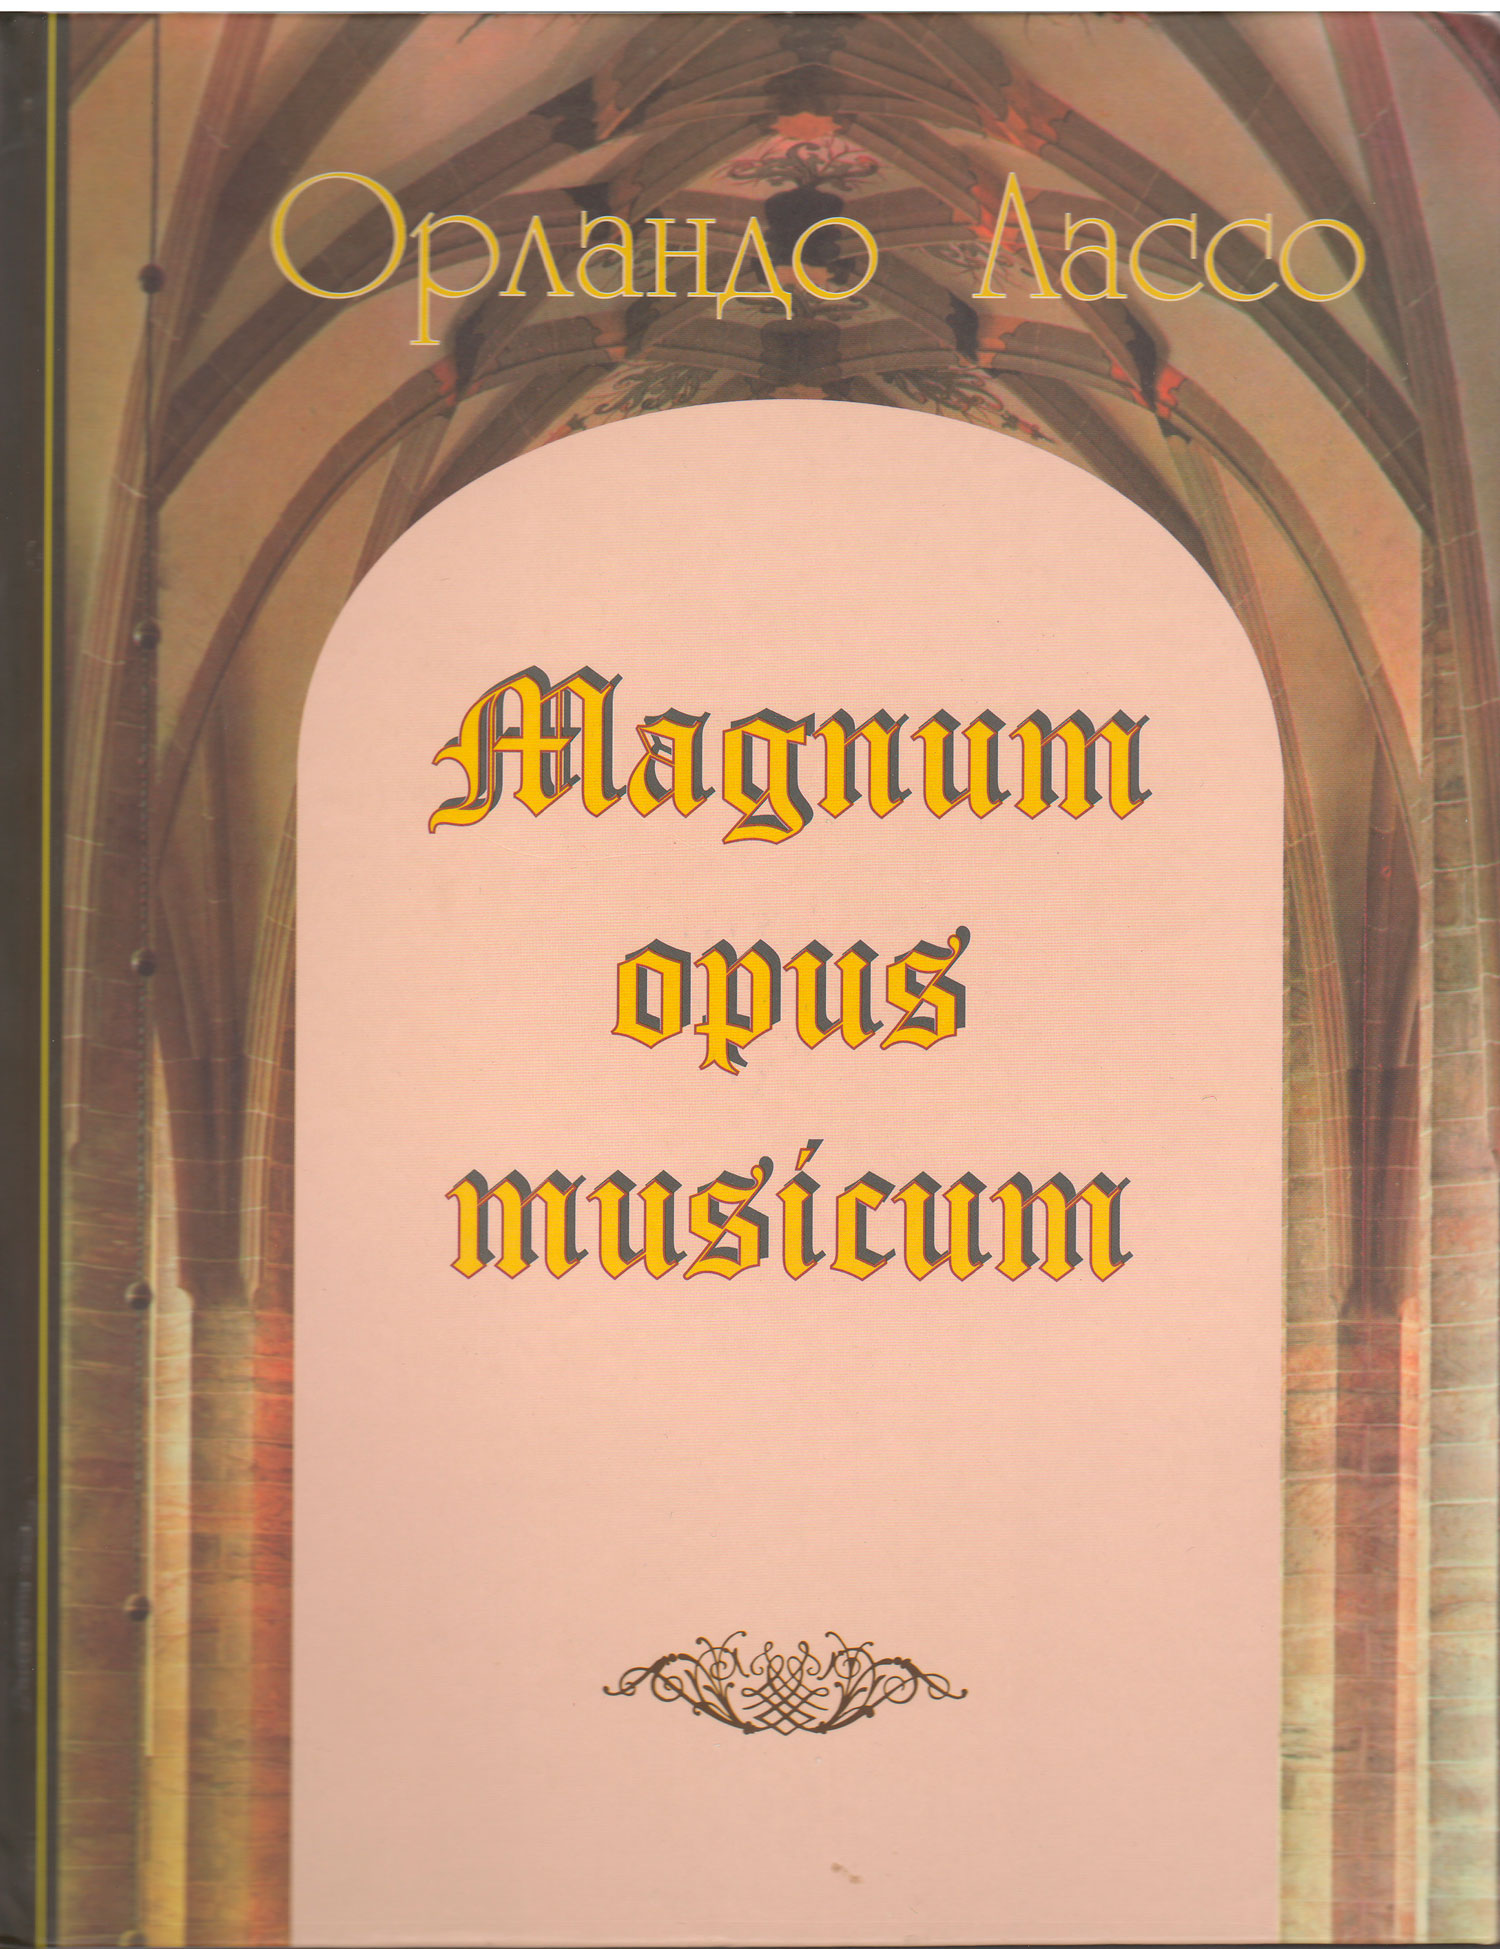 Magnum opus musikum 